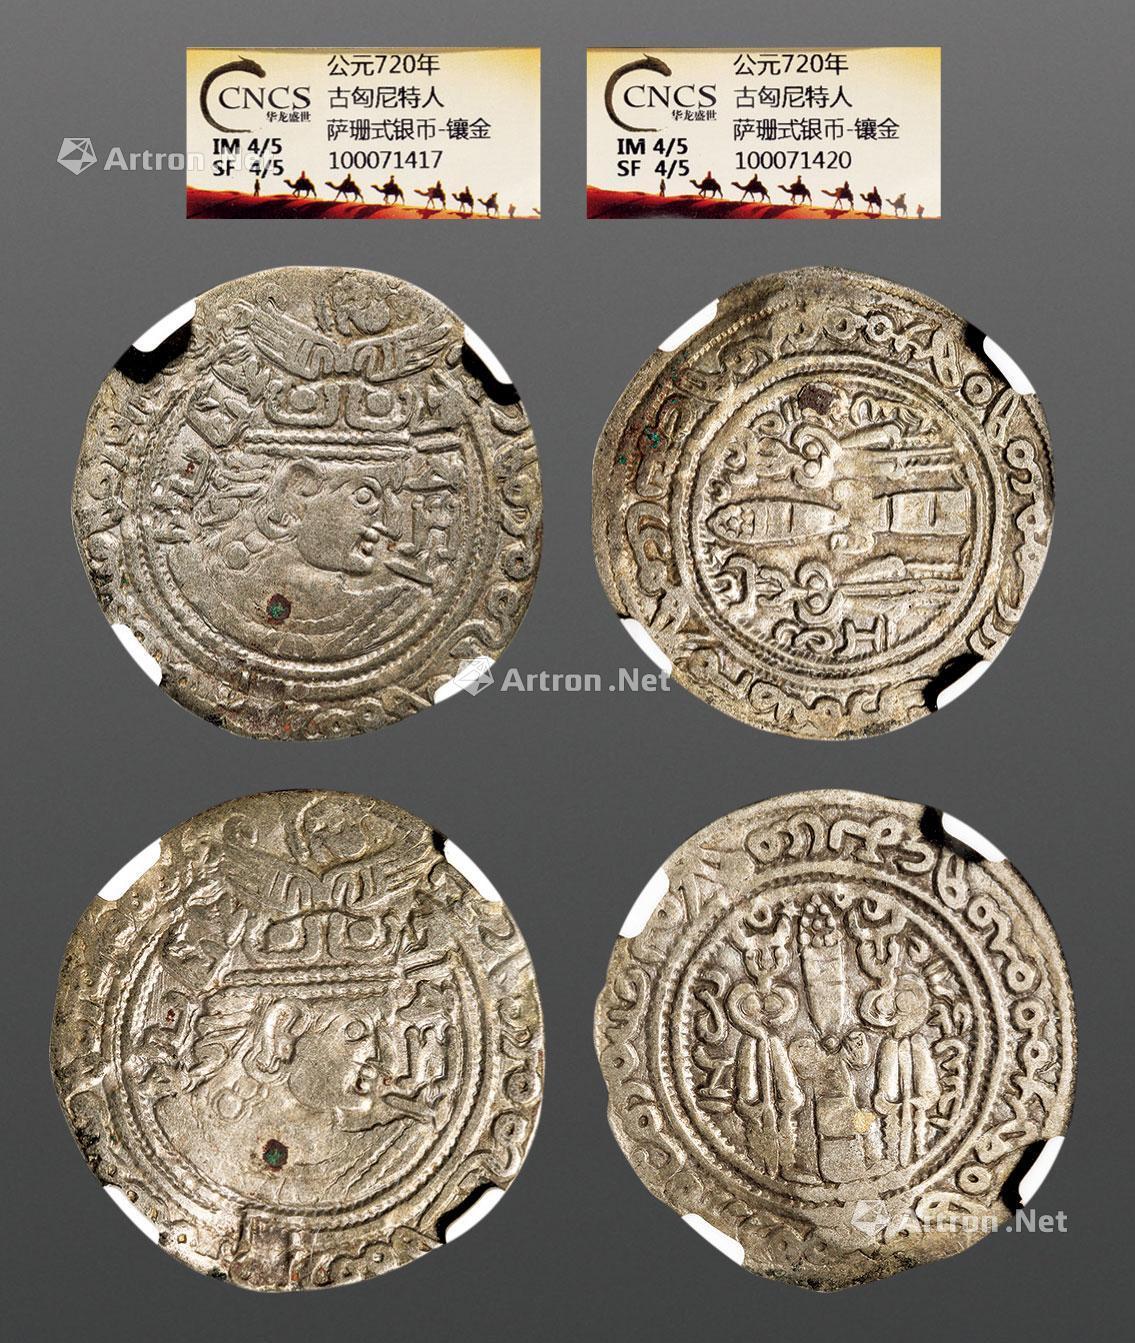 公元7年古匈尼特人萨珊式银币 镶金 二枚 拍卖品 图片 价格 鉴赏 钱币 雅昌艺术品拍卖网